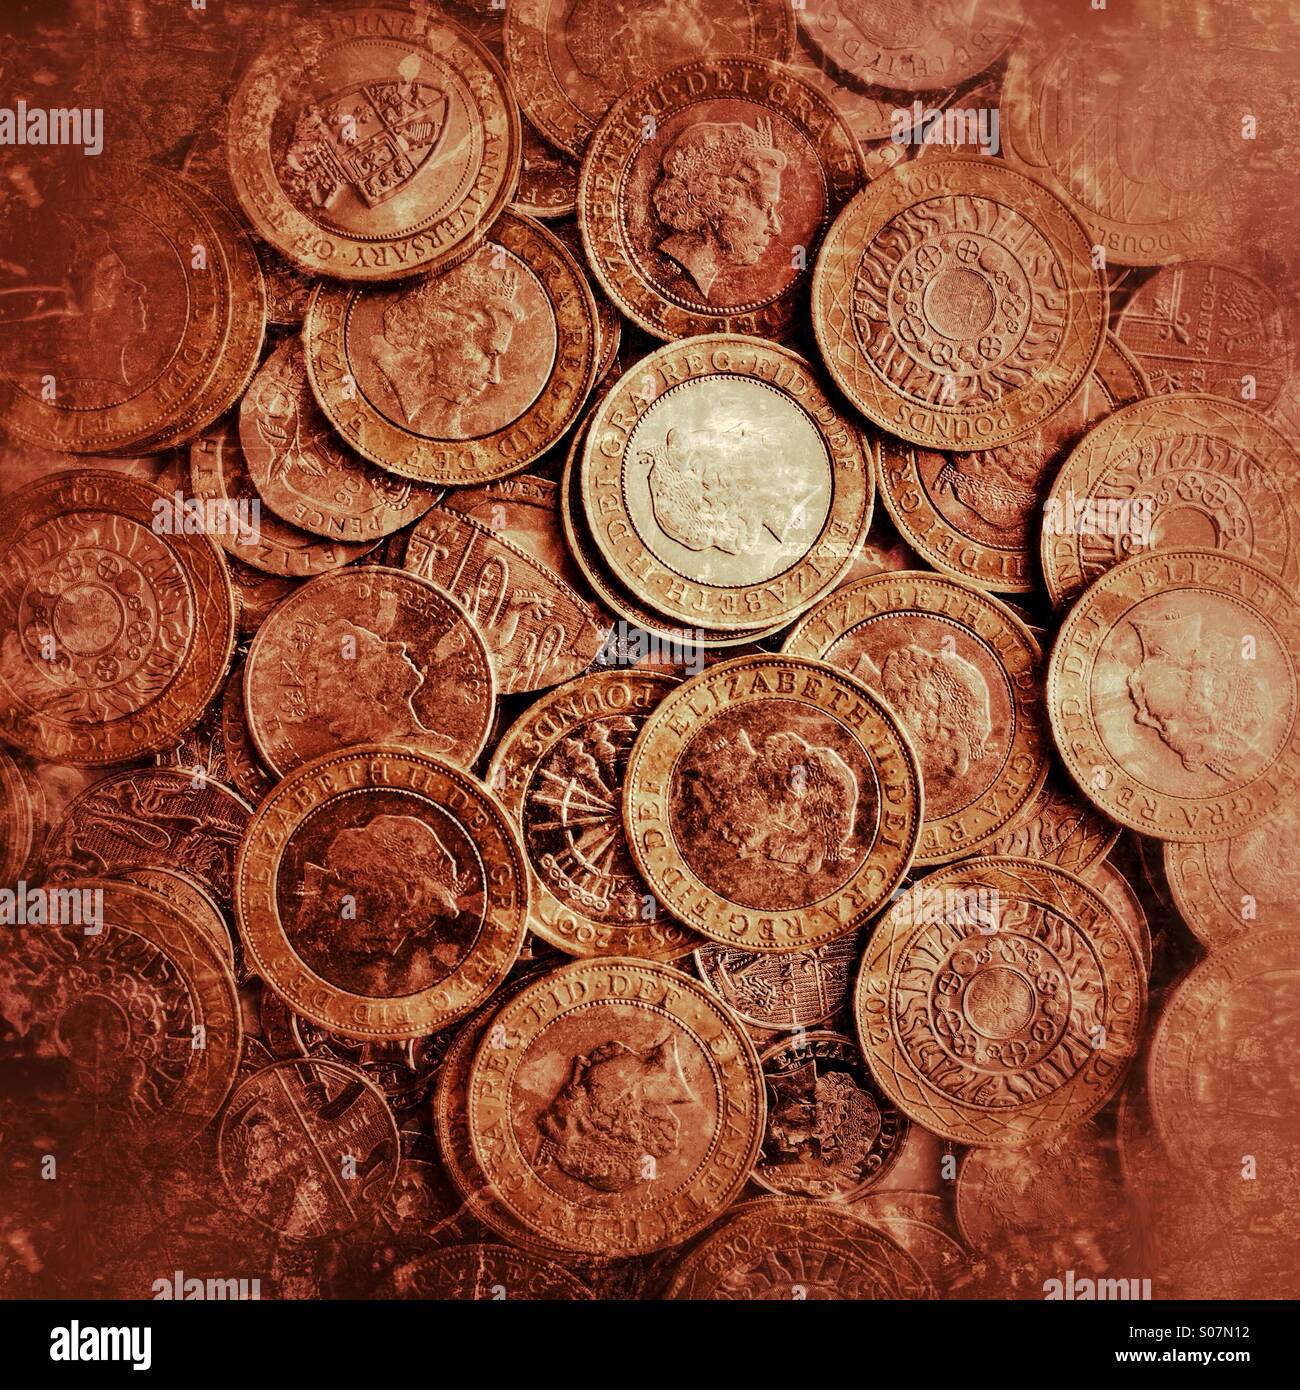 Ein Stash von britischen £2-Münzen - Geldgeld GBP-Währung Geldmünzgeld Hintergrund Stockfoto